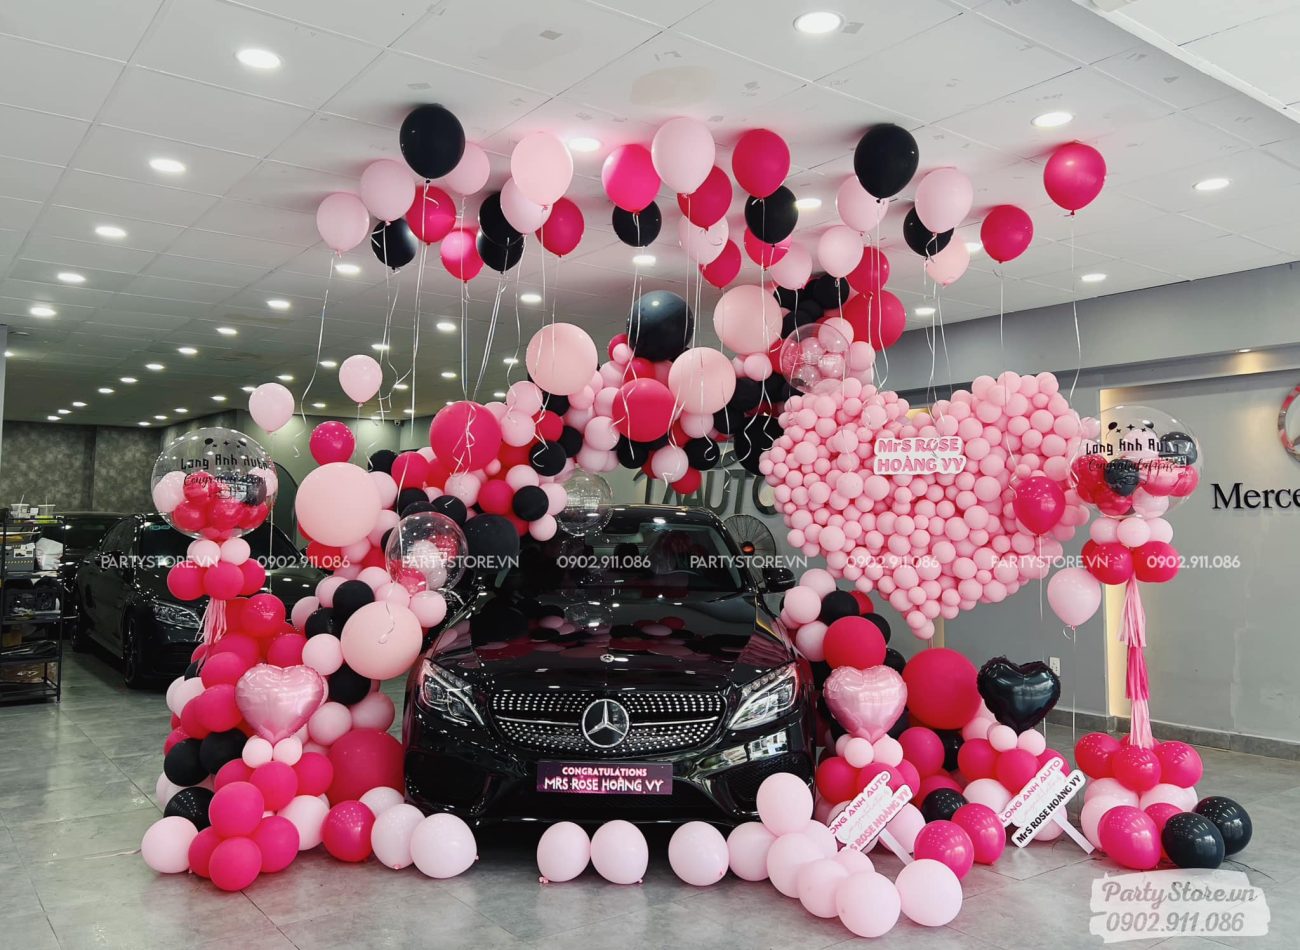 Trang trí nhận xe hơi với bong bóng hồng và đen, bóng bay helium